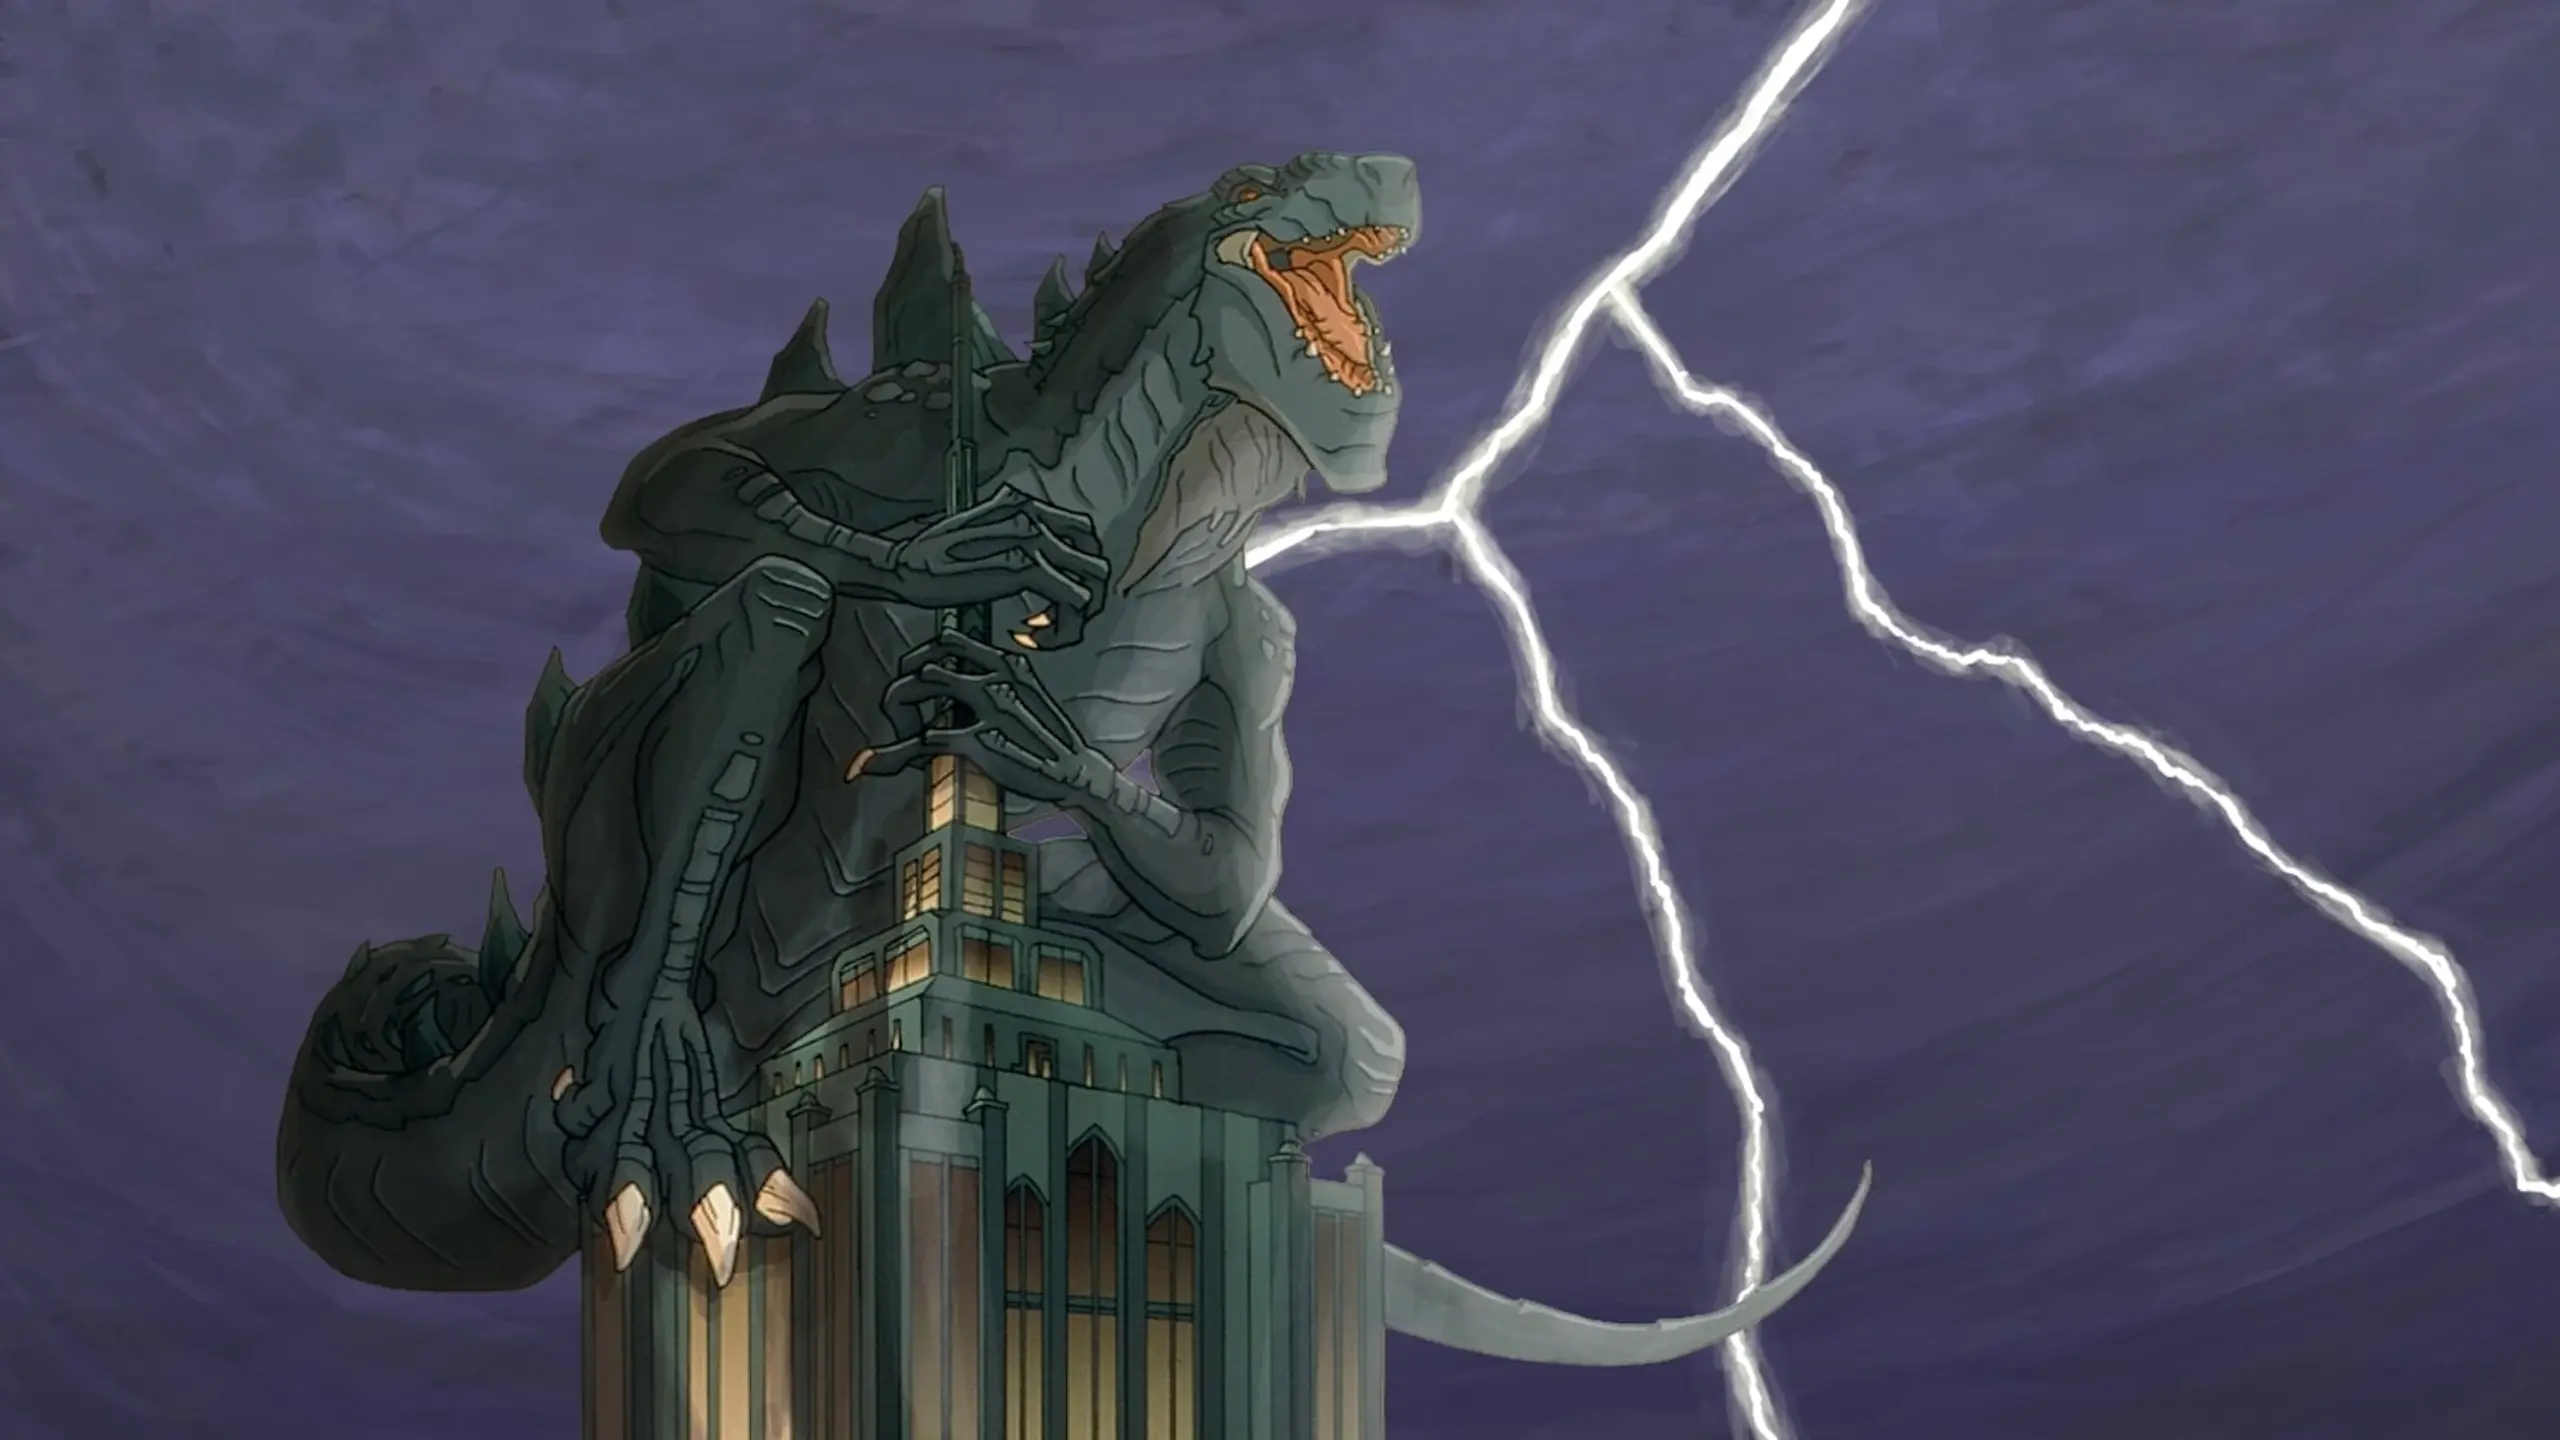 Godzilla - Die Serie